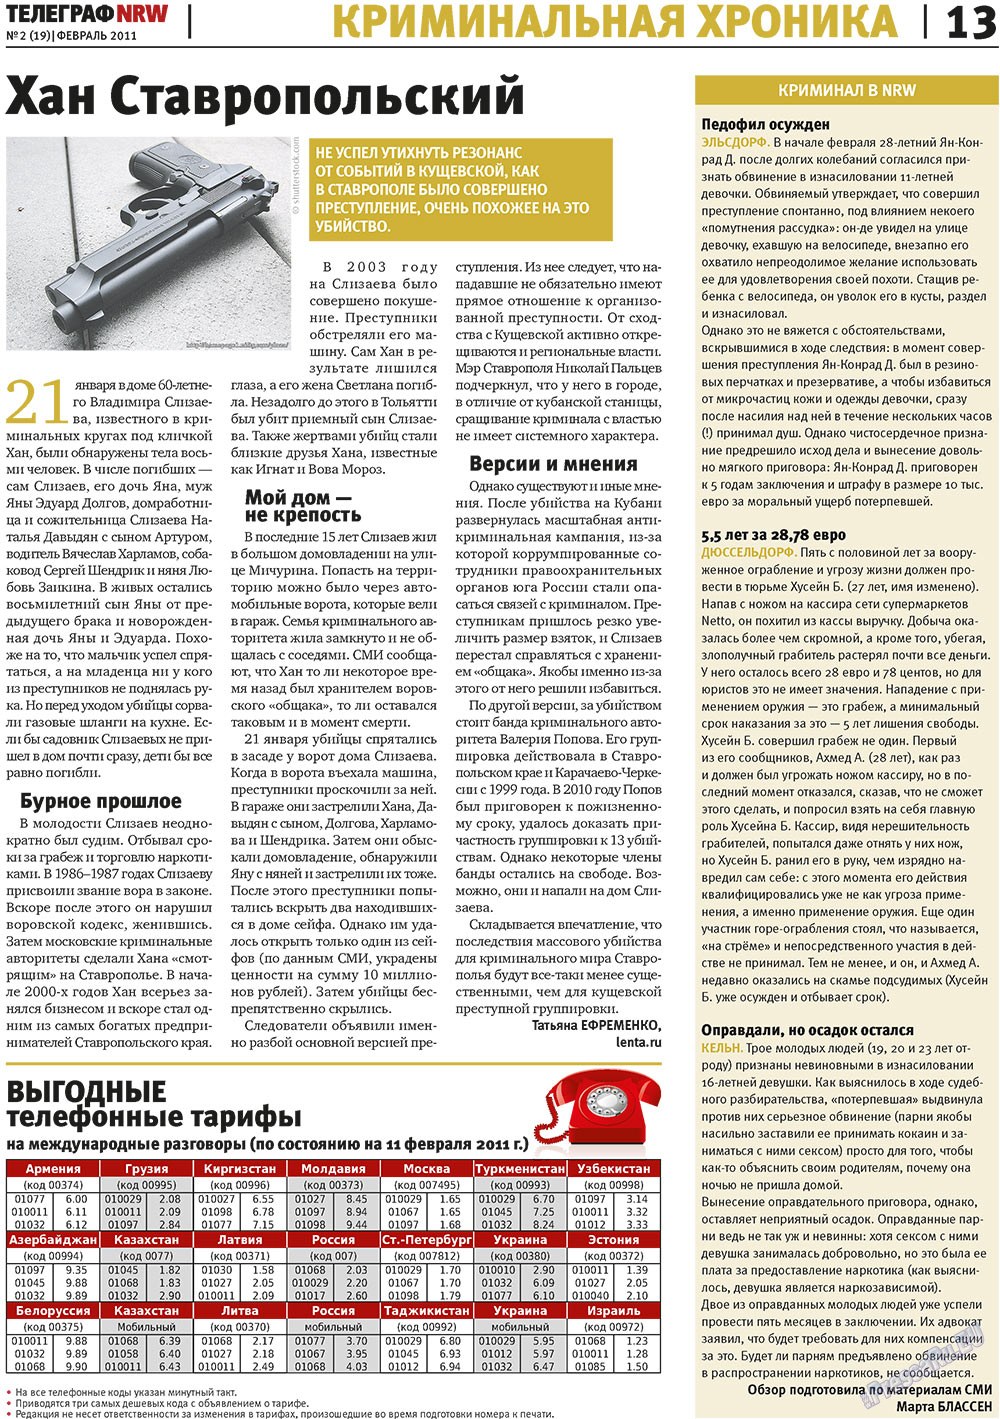 Телеграф NRW (газета). 2011 год, номер 2, стр. 13